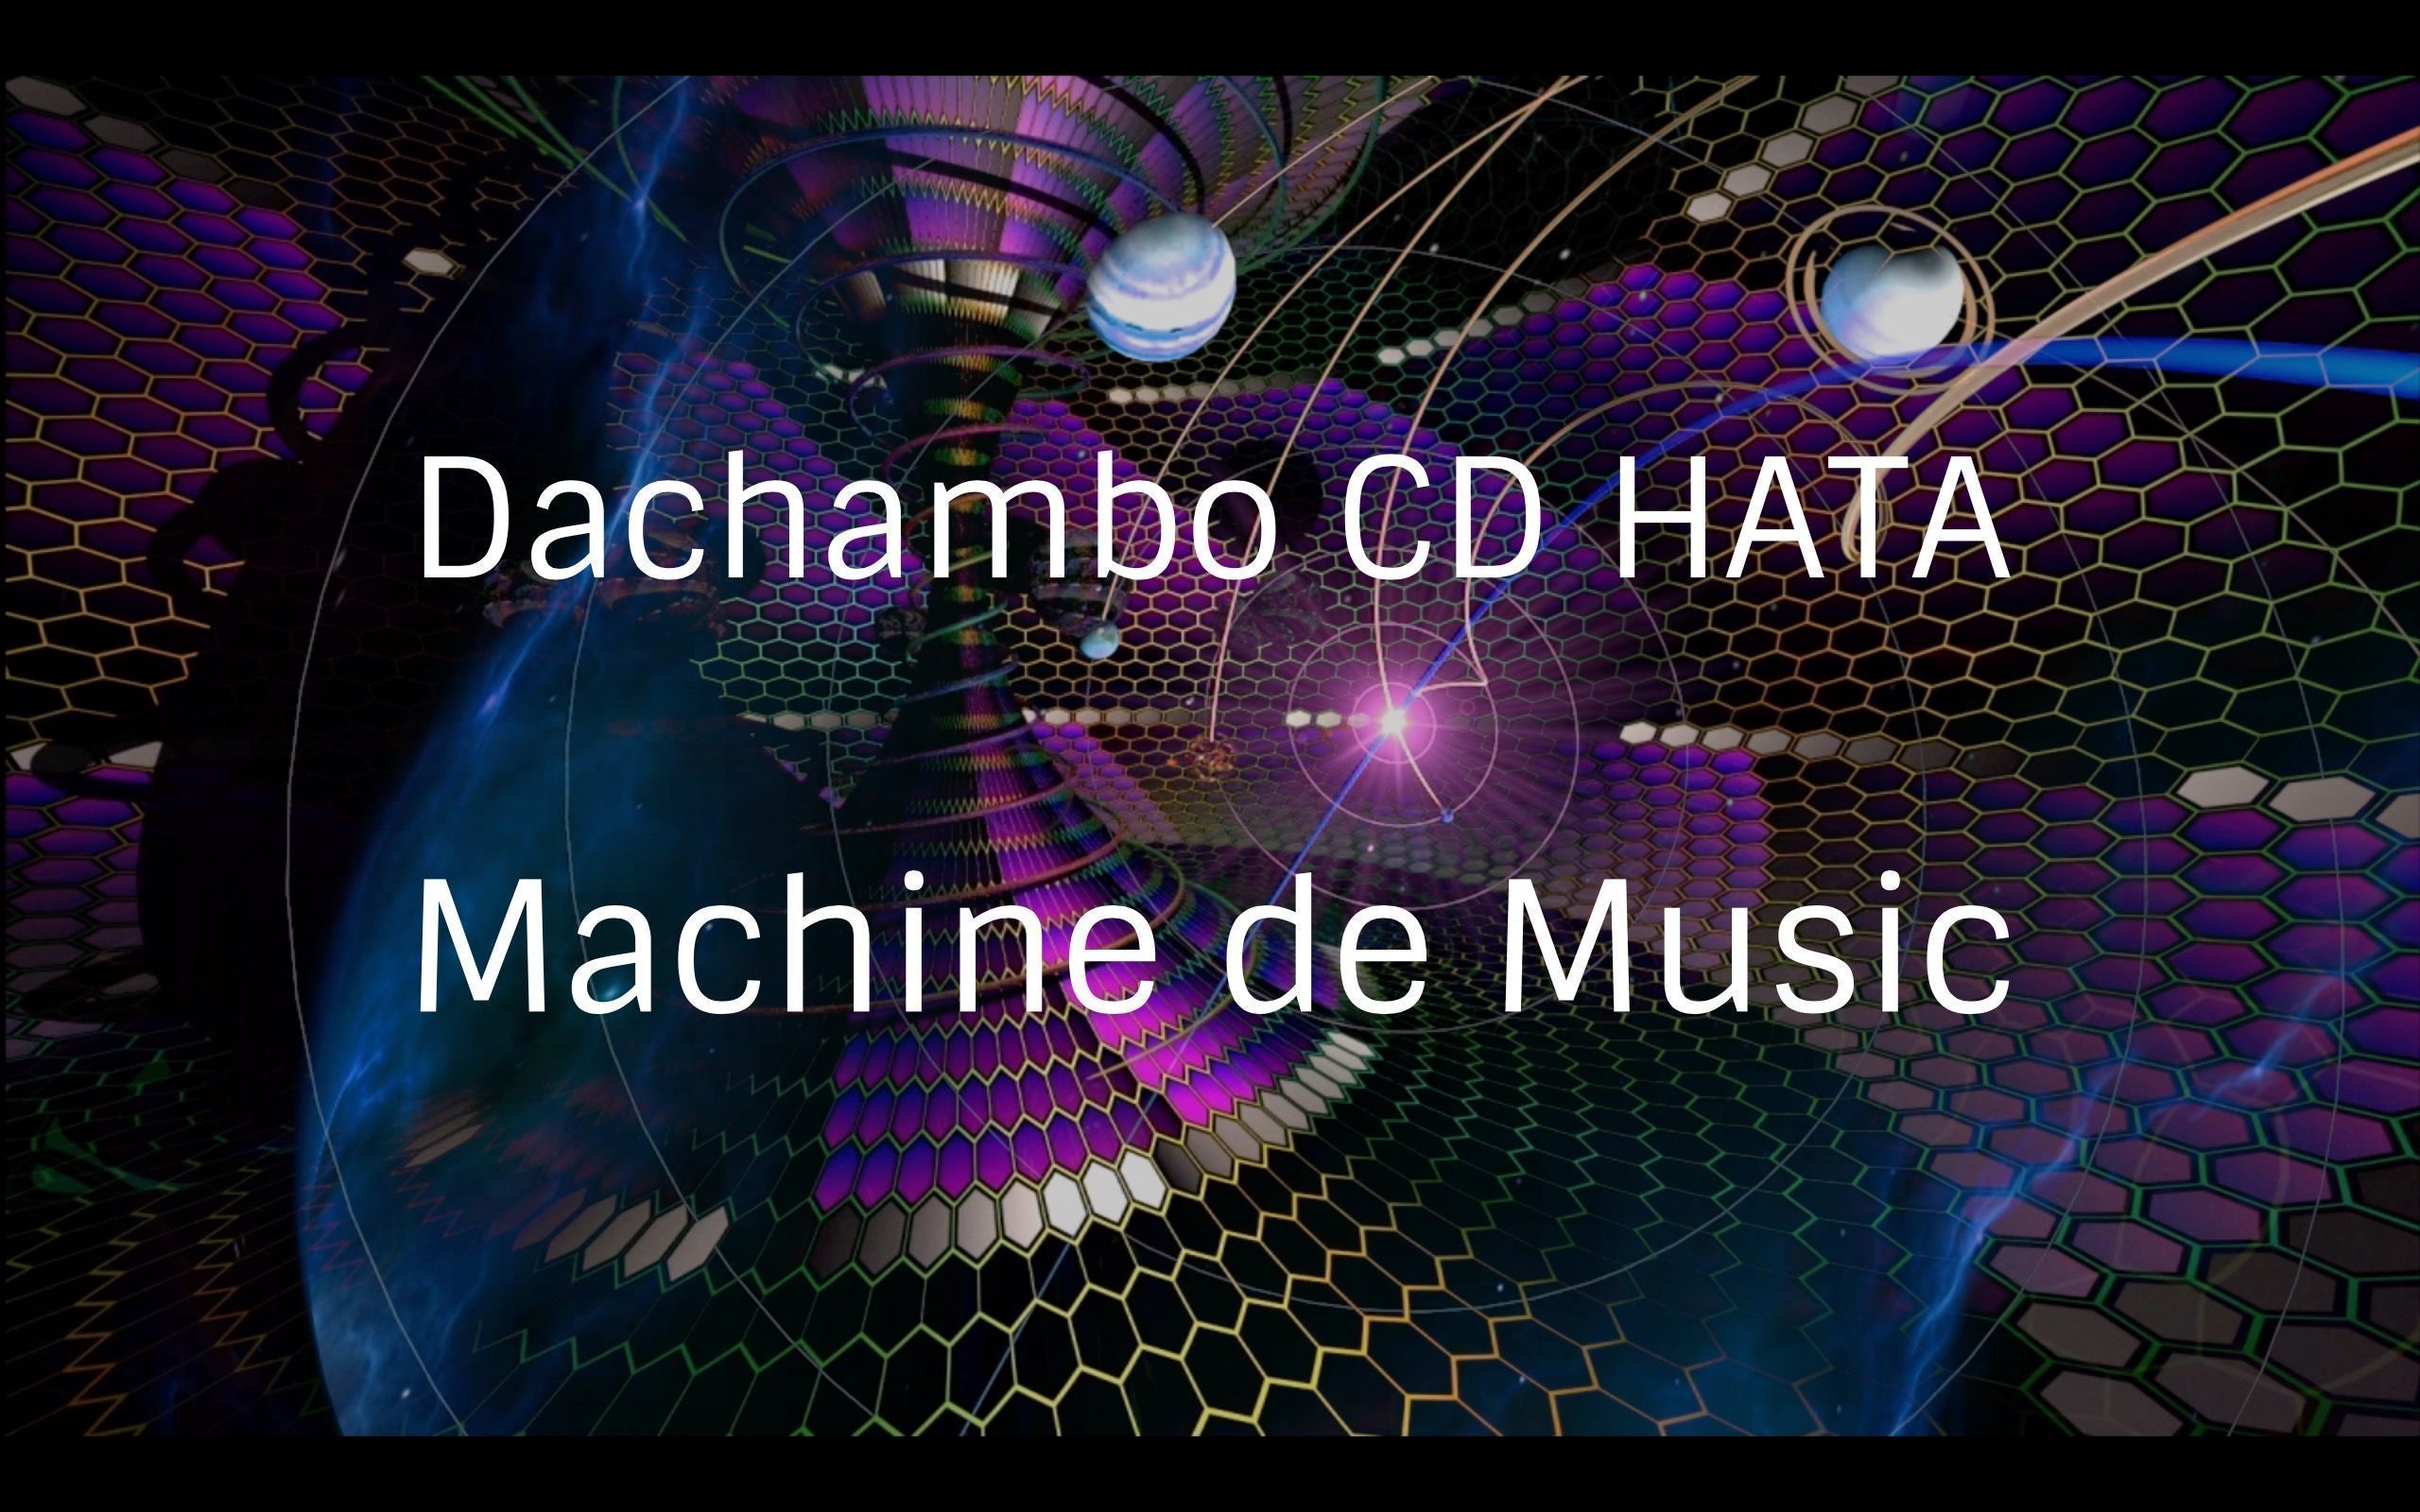 Dachambo CD HATAのMachine de Music コラムVol.46 
オランダからのシンセ旋風 Rob Papen
